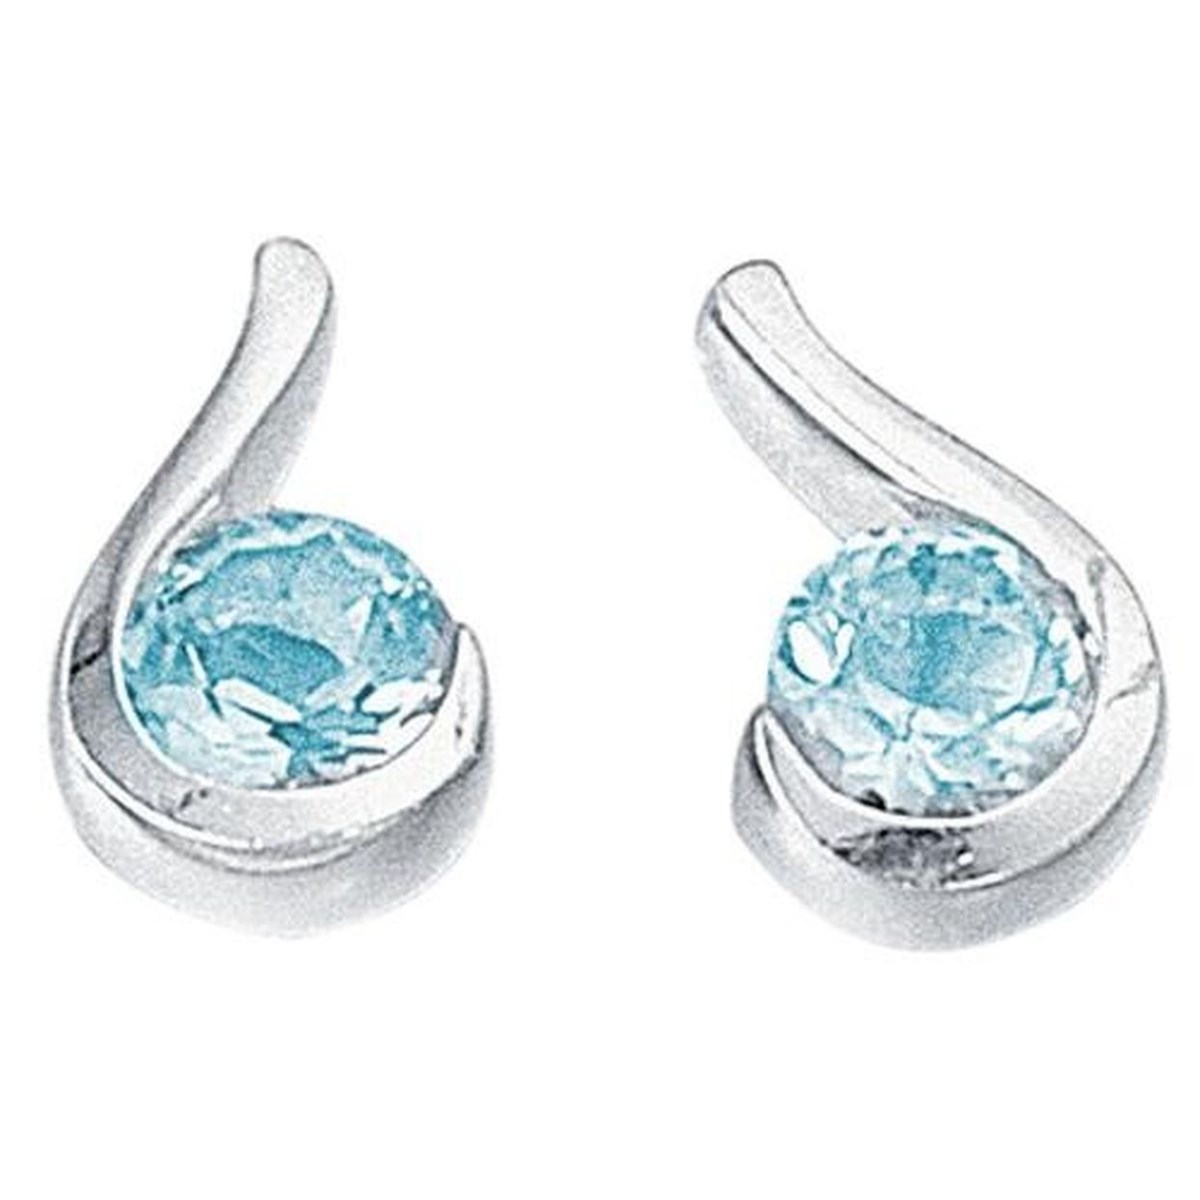 Boucle d'oreille zirconia bleu en argent 925/1000